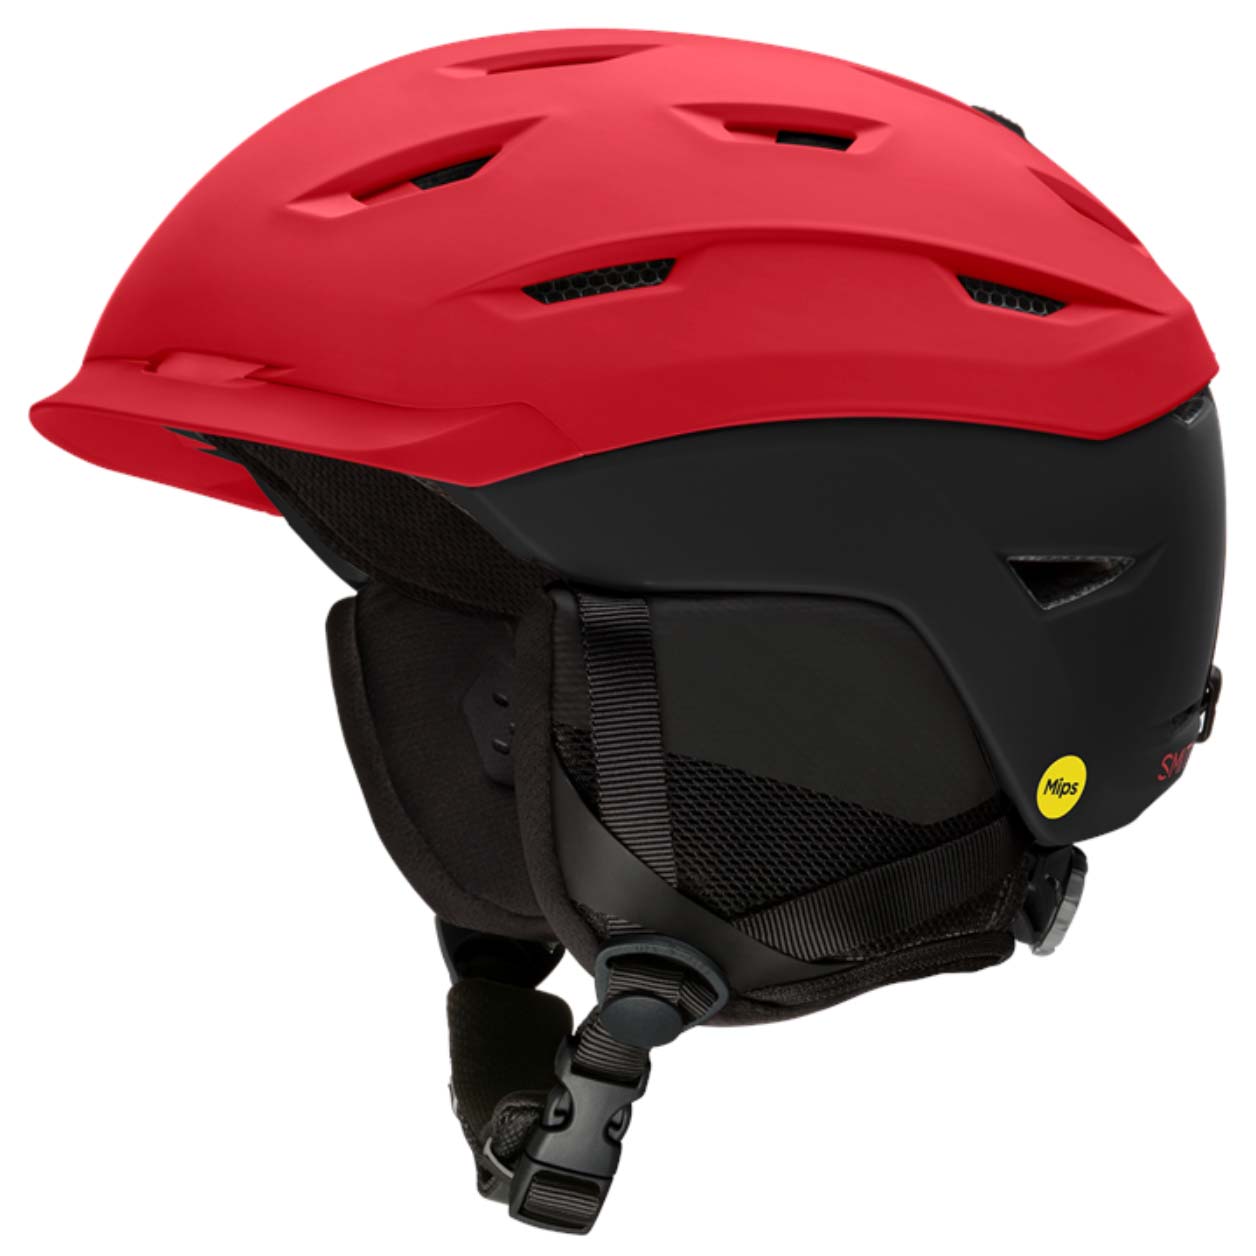 10/20X Mask Holder For Ski Helmet Snow Snowboard Multipurpose Helmet Holder Clip 